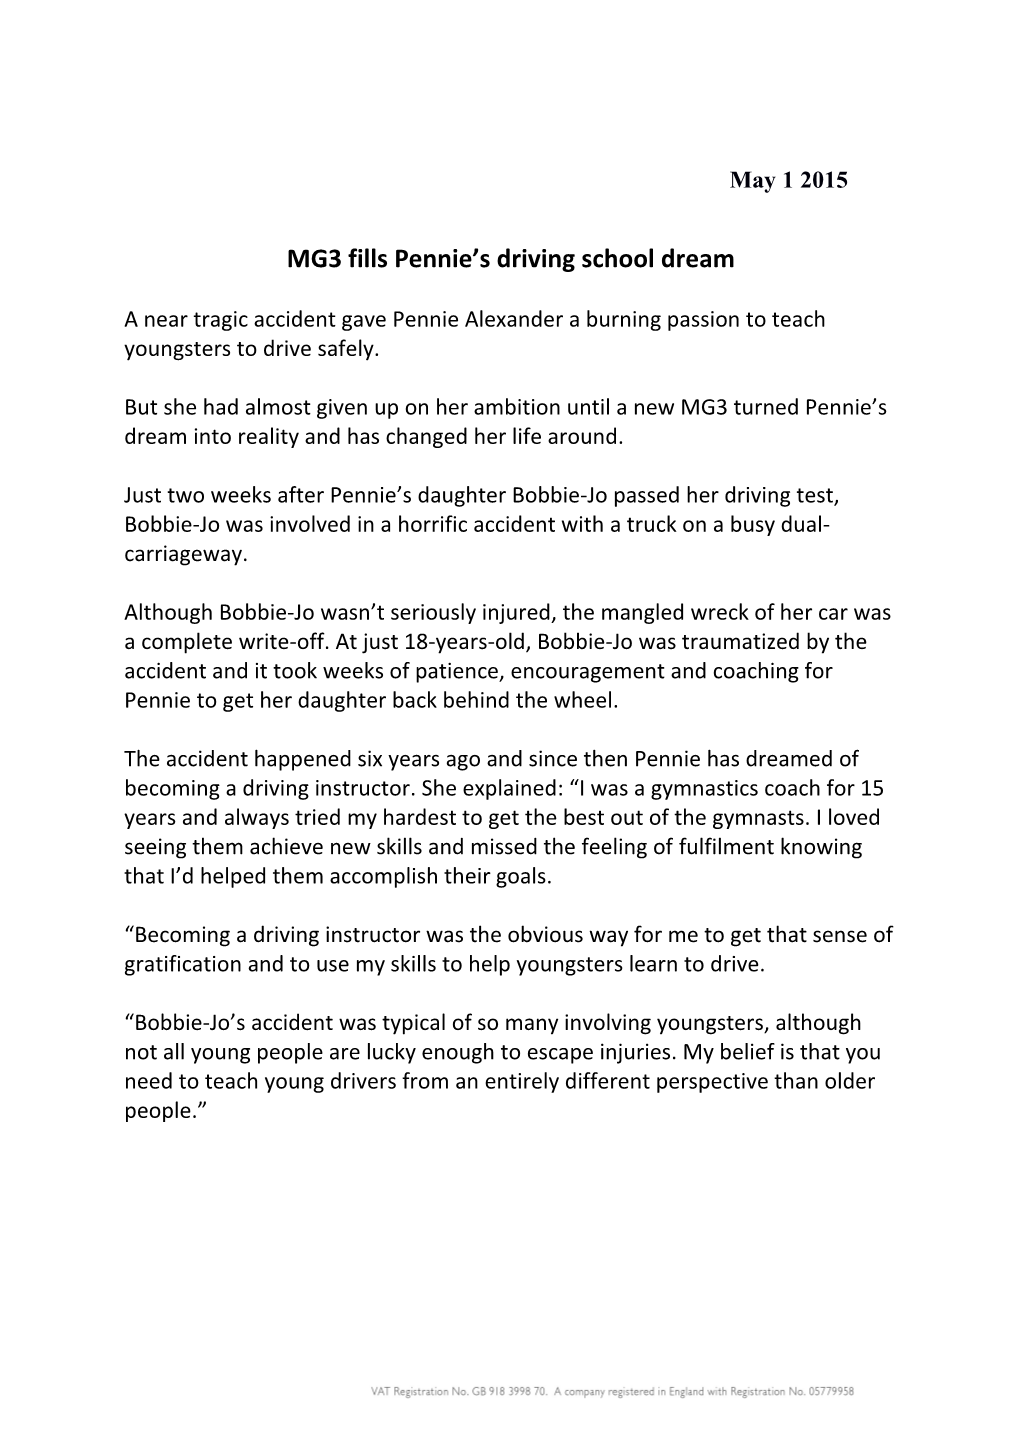 MG3 Fills Pennie S Driving School Dream